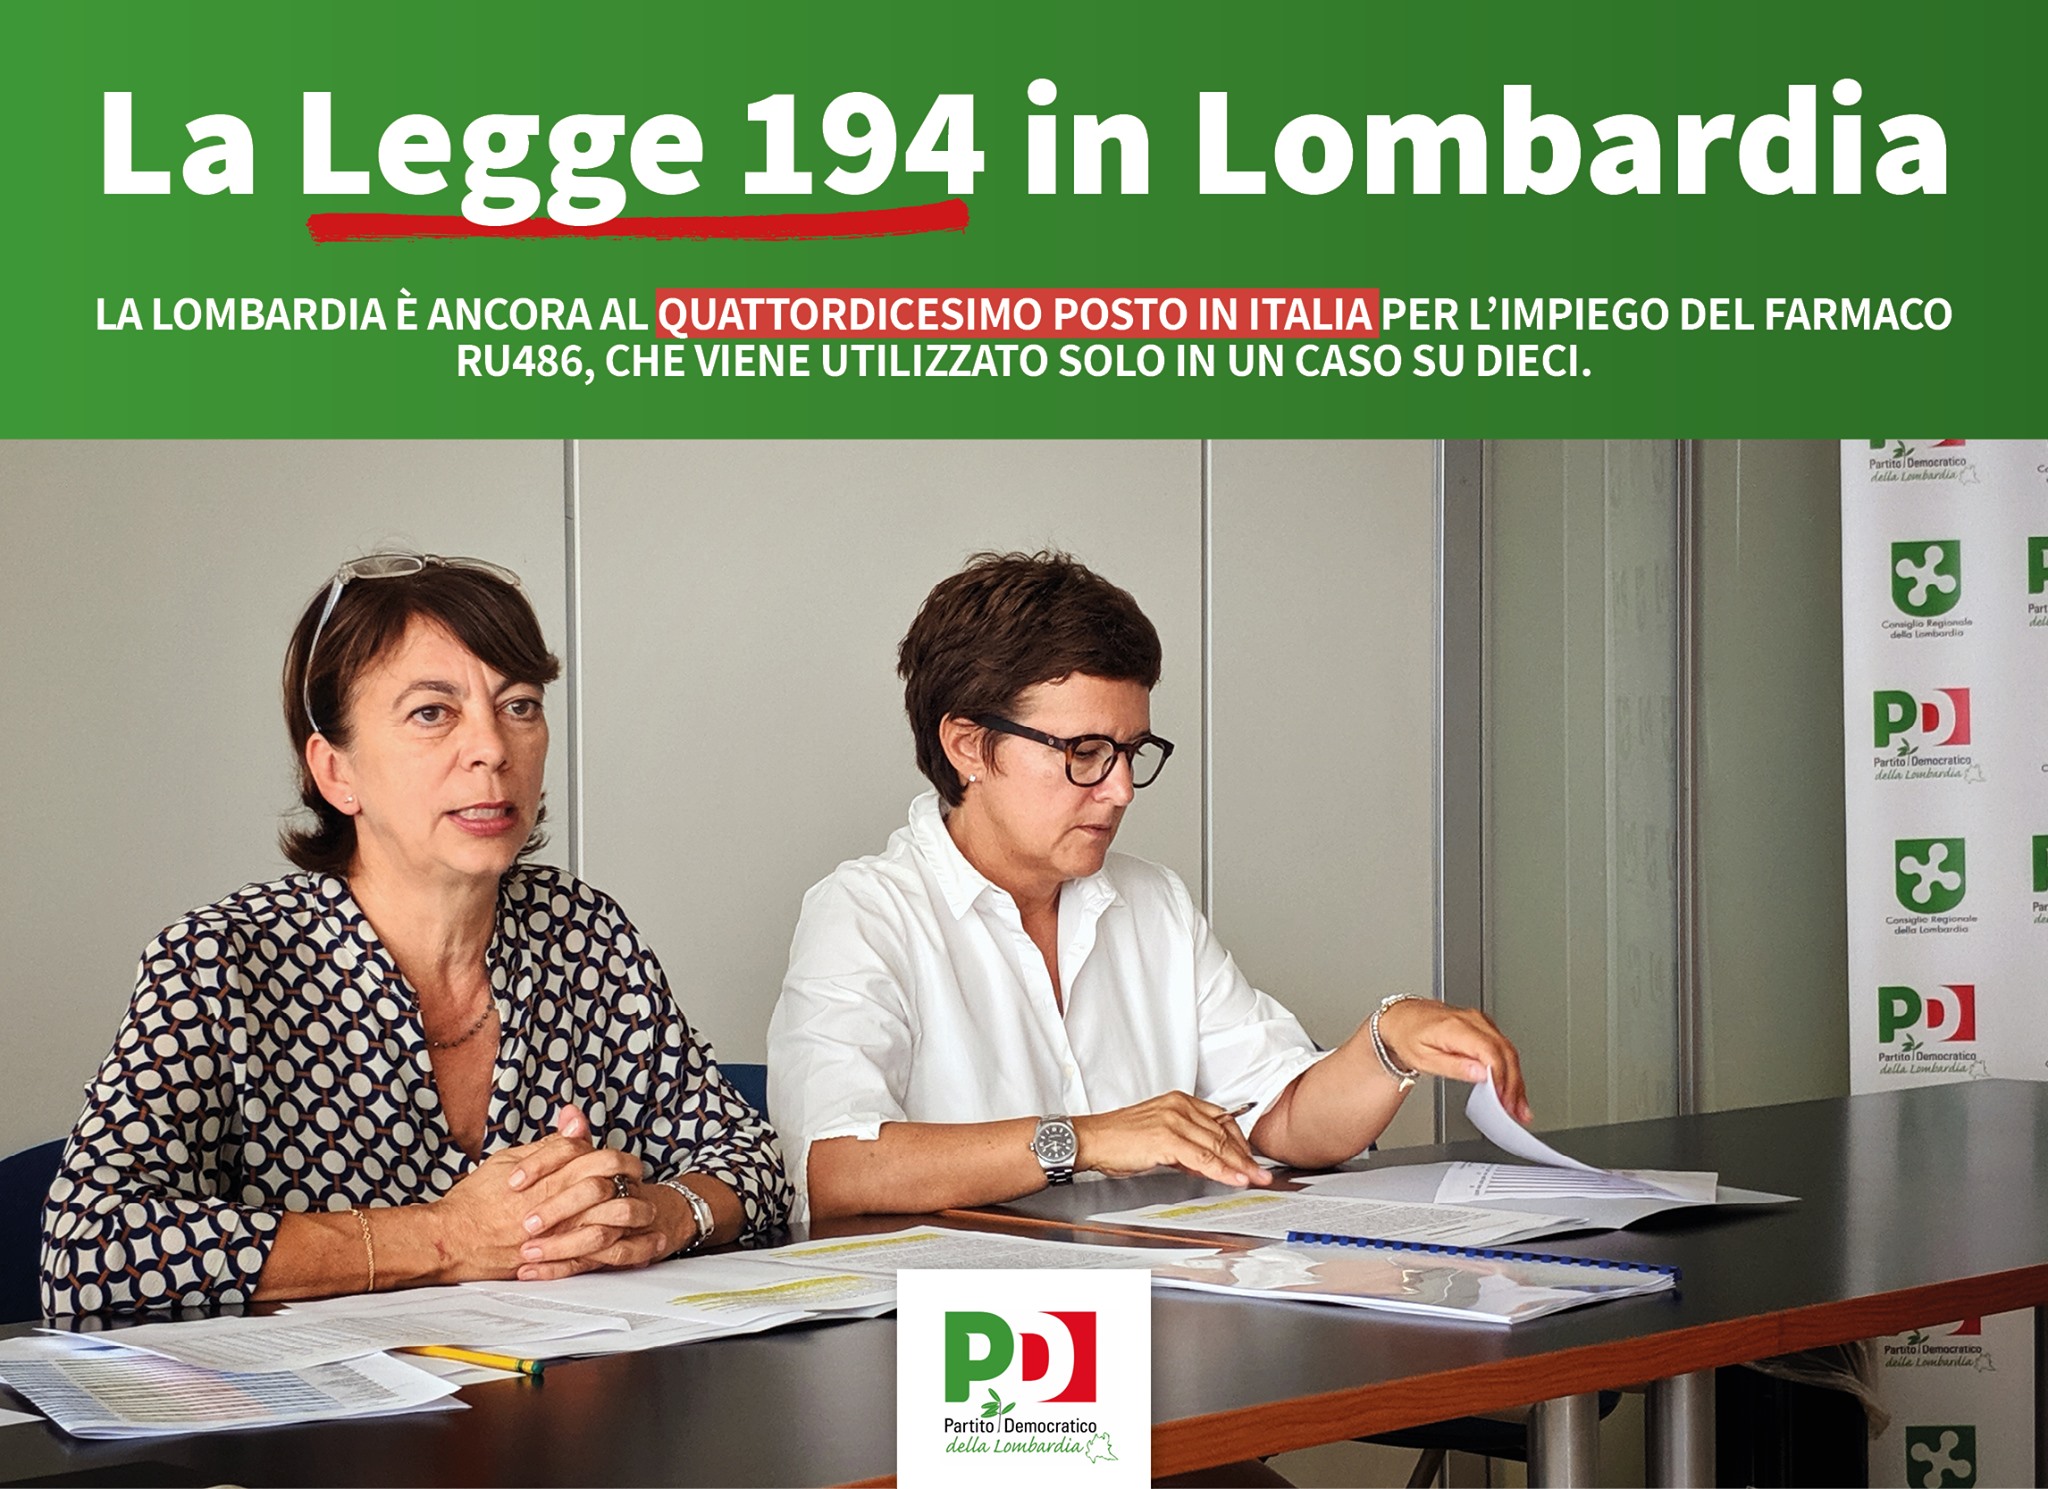 Paola Bocci e Antonella Forattini, durante la presentazione dei dati sull'attuazione della legge 194 in Lombardia